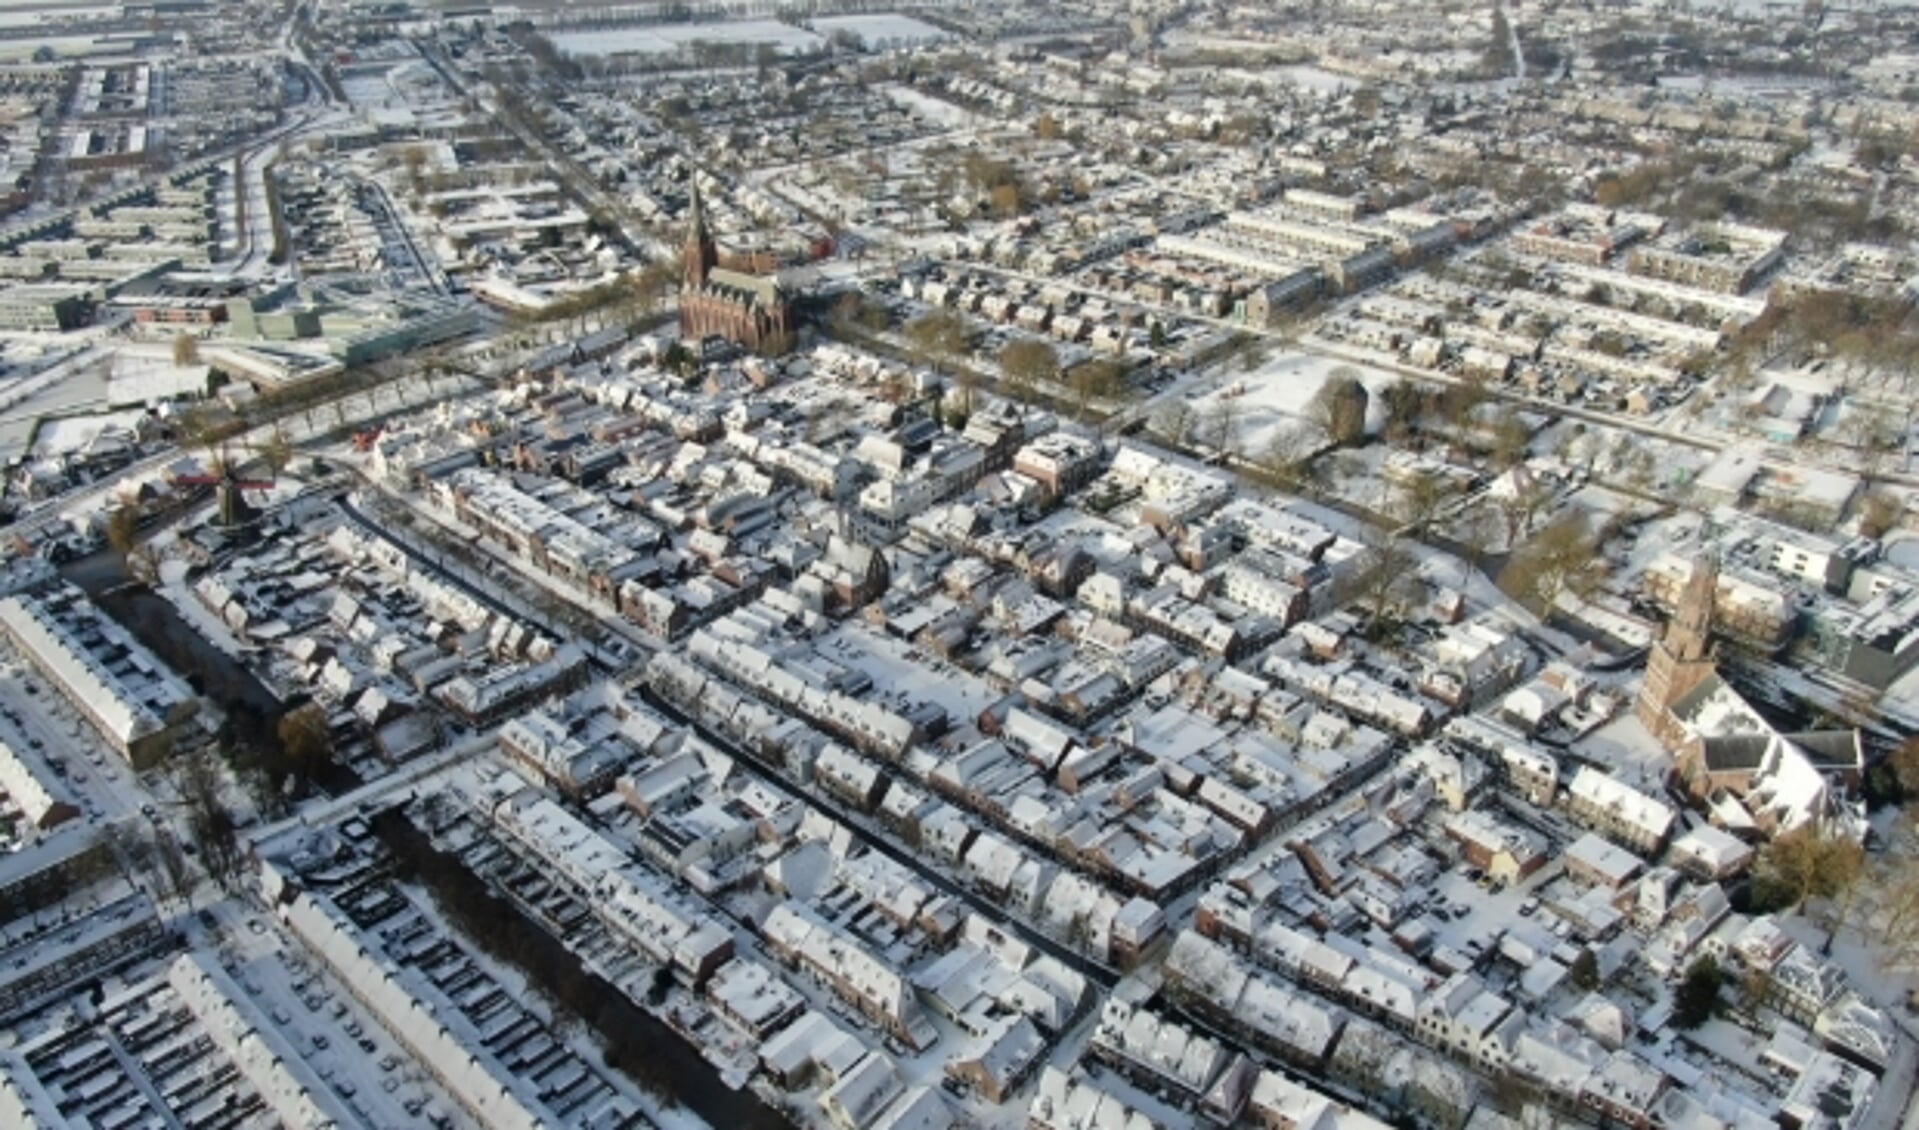 Binnenstad IJsselstein in de sneeuw. De foto is genomen met een drone.